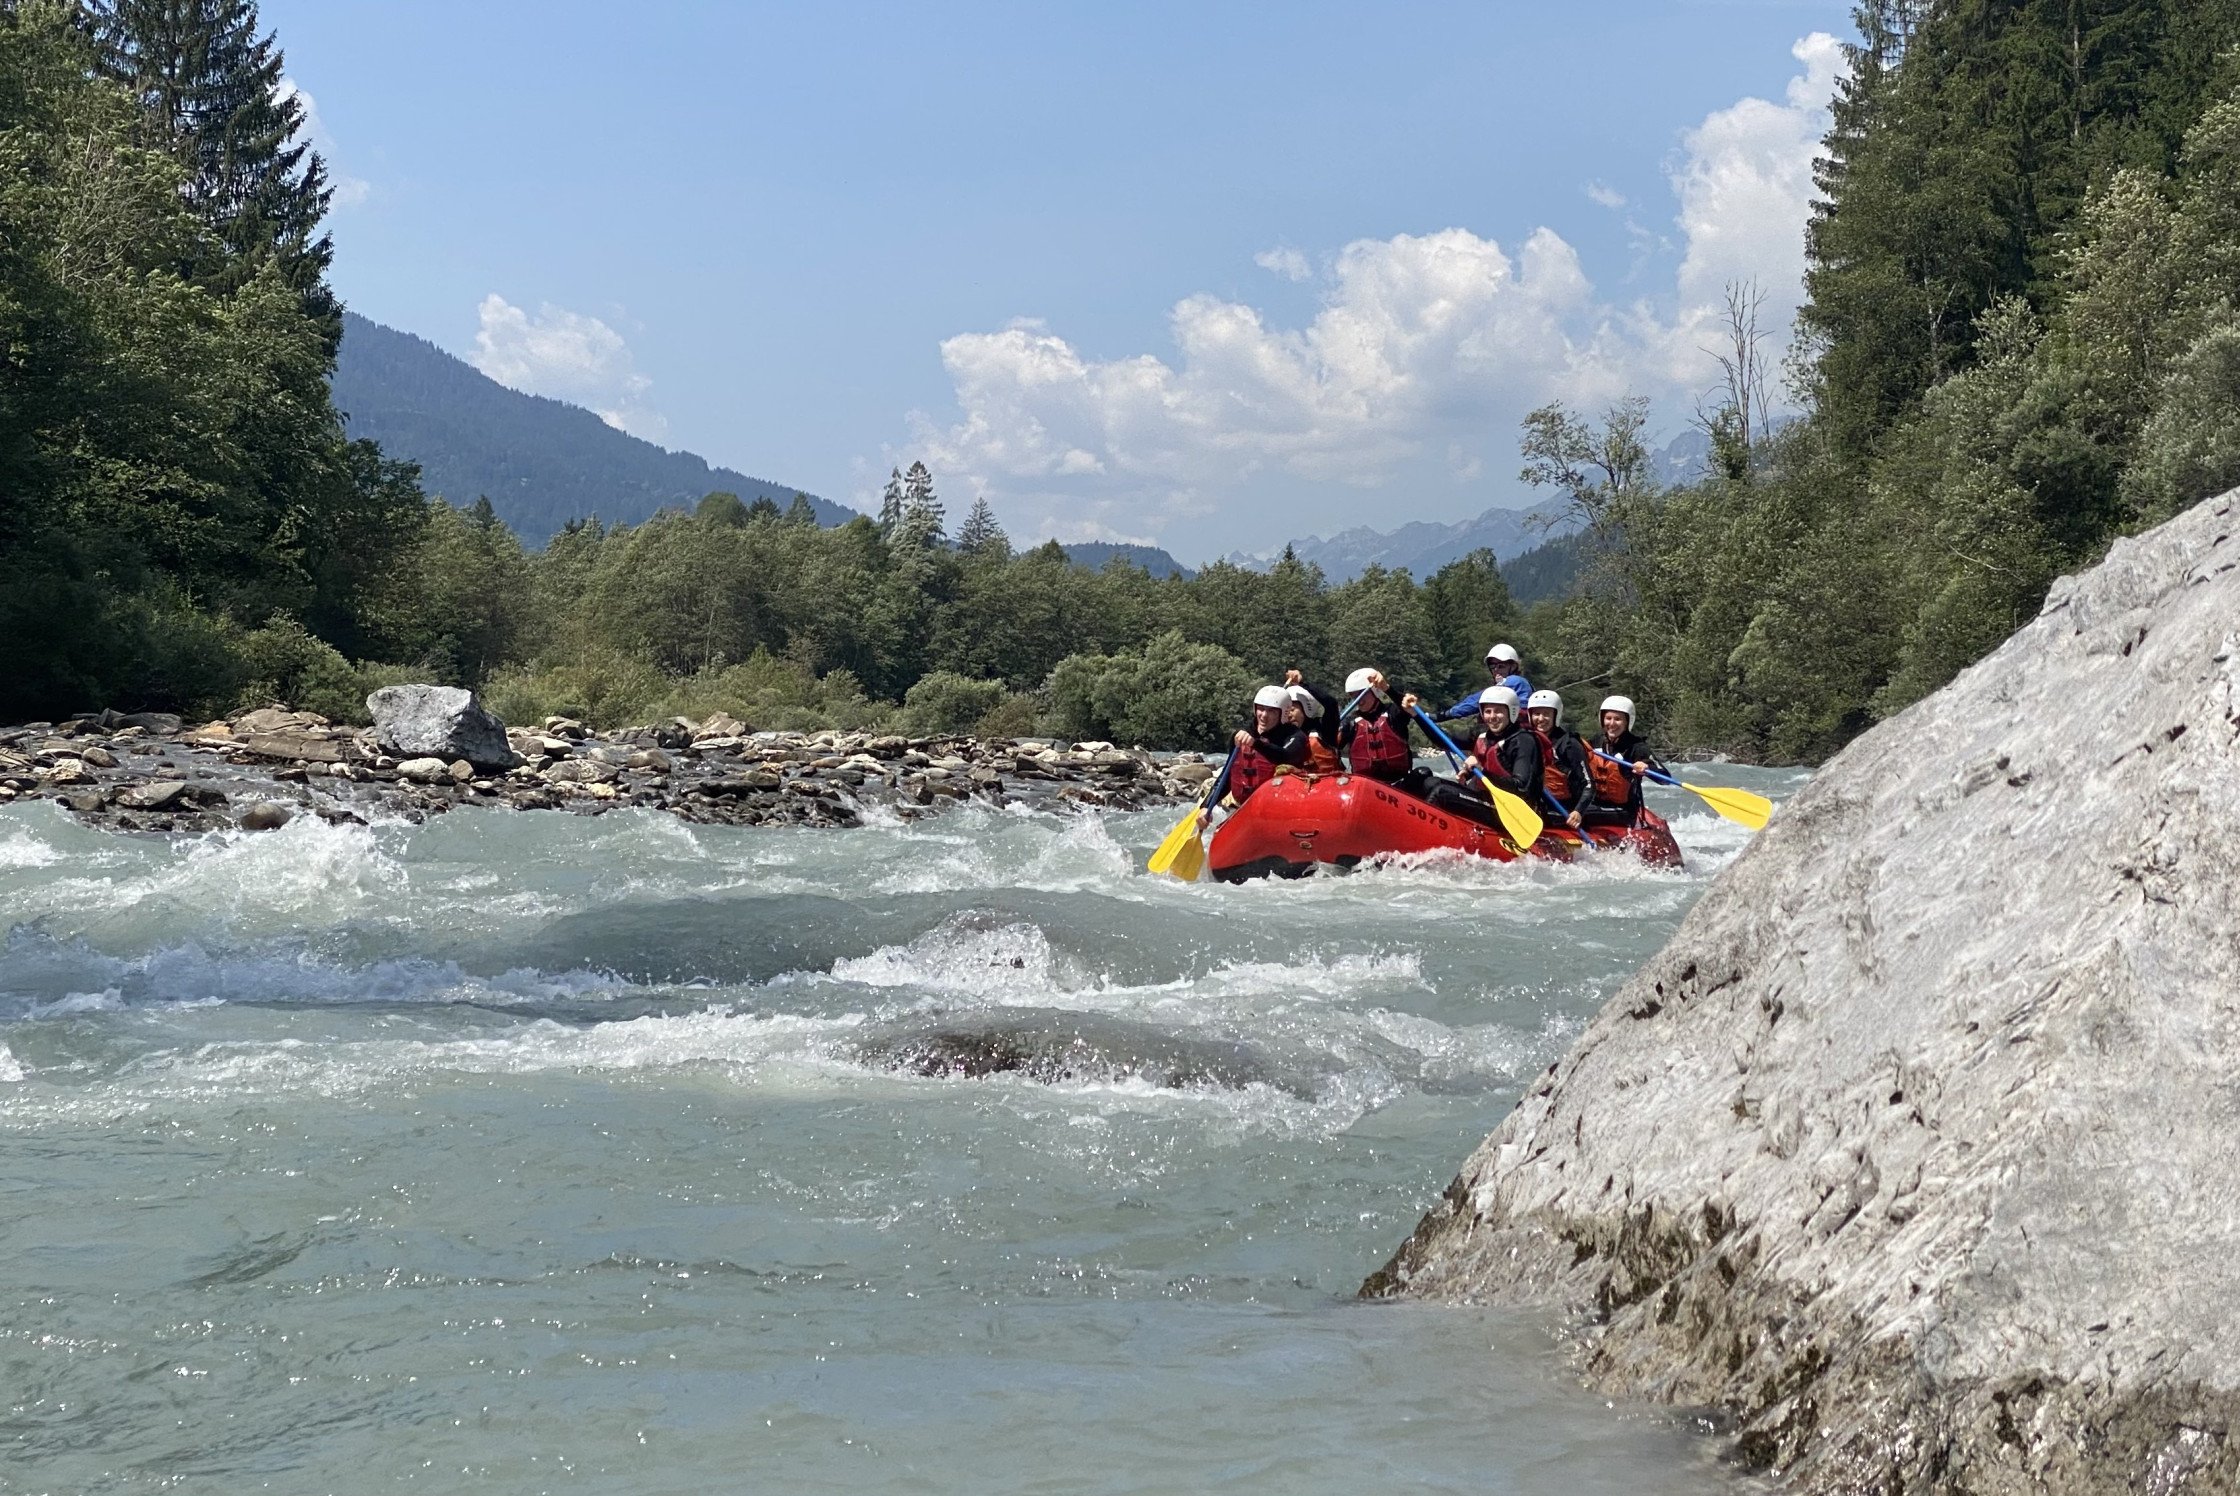 Gemeinsam durch die wilden Fluten: Erlebe die Faszination der Rheinschlucht auf unserer Raftingtour in Graubünden!